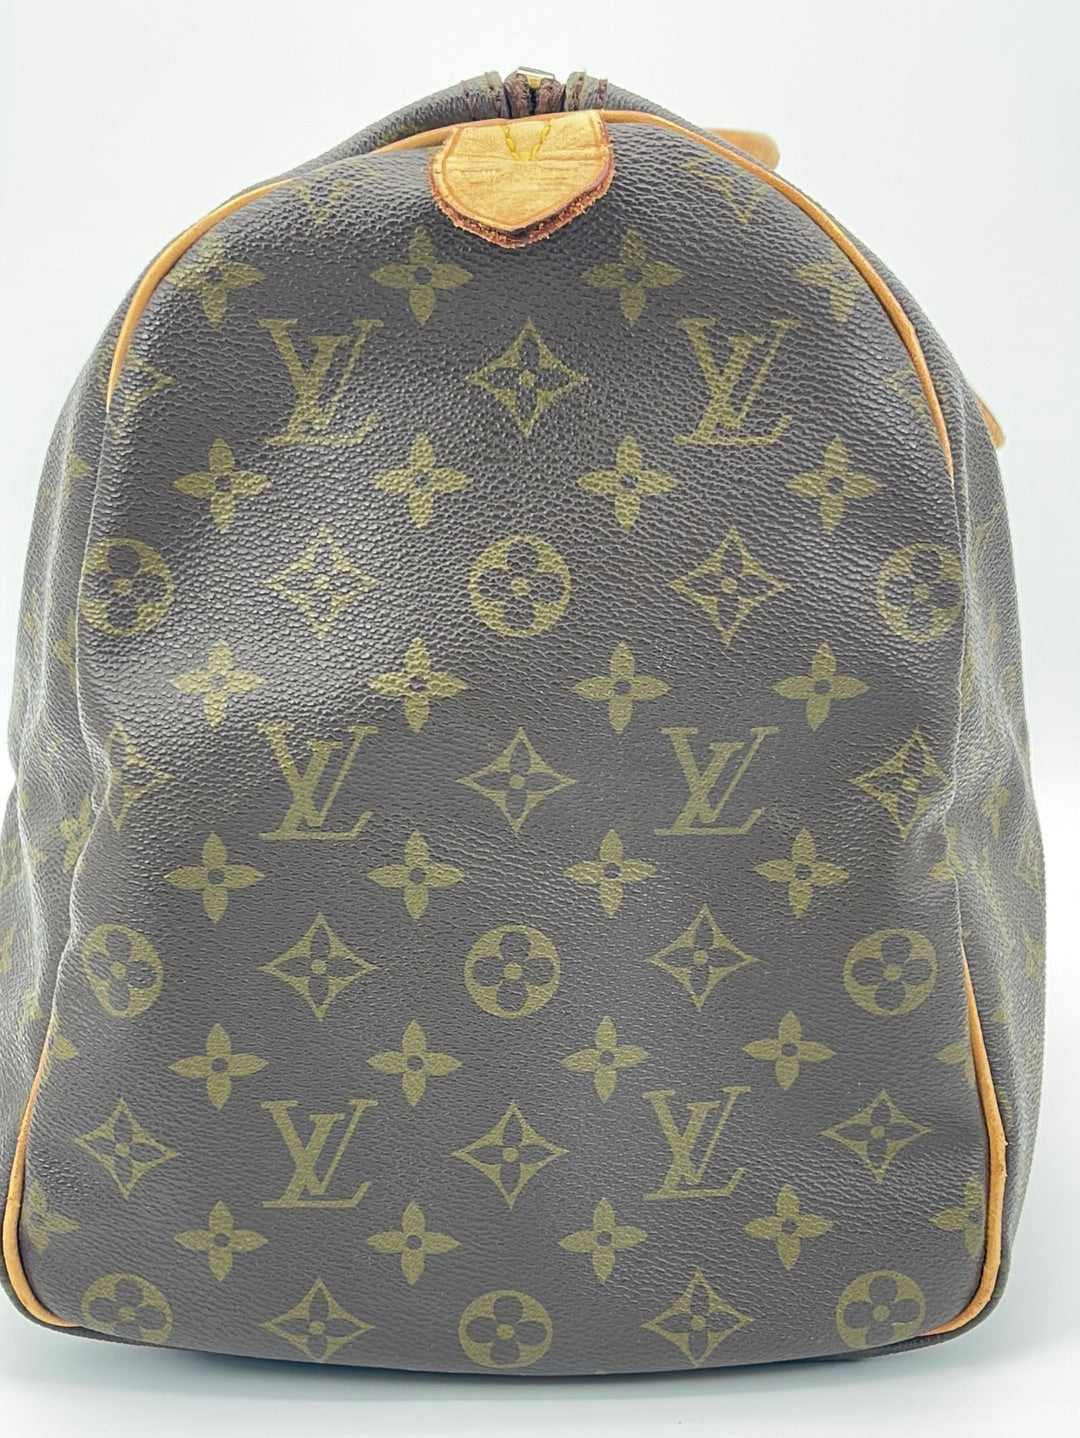 Vintage Louis Vuitton Keepall 60 Monogram Duffel Bag 4MQ9D8R 030723 –  KimmieBBags LLC